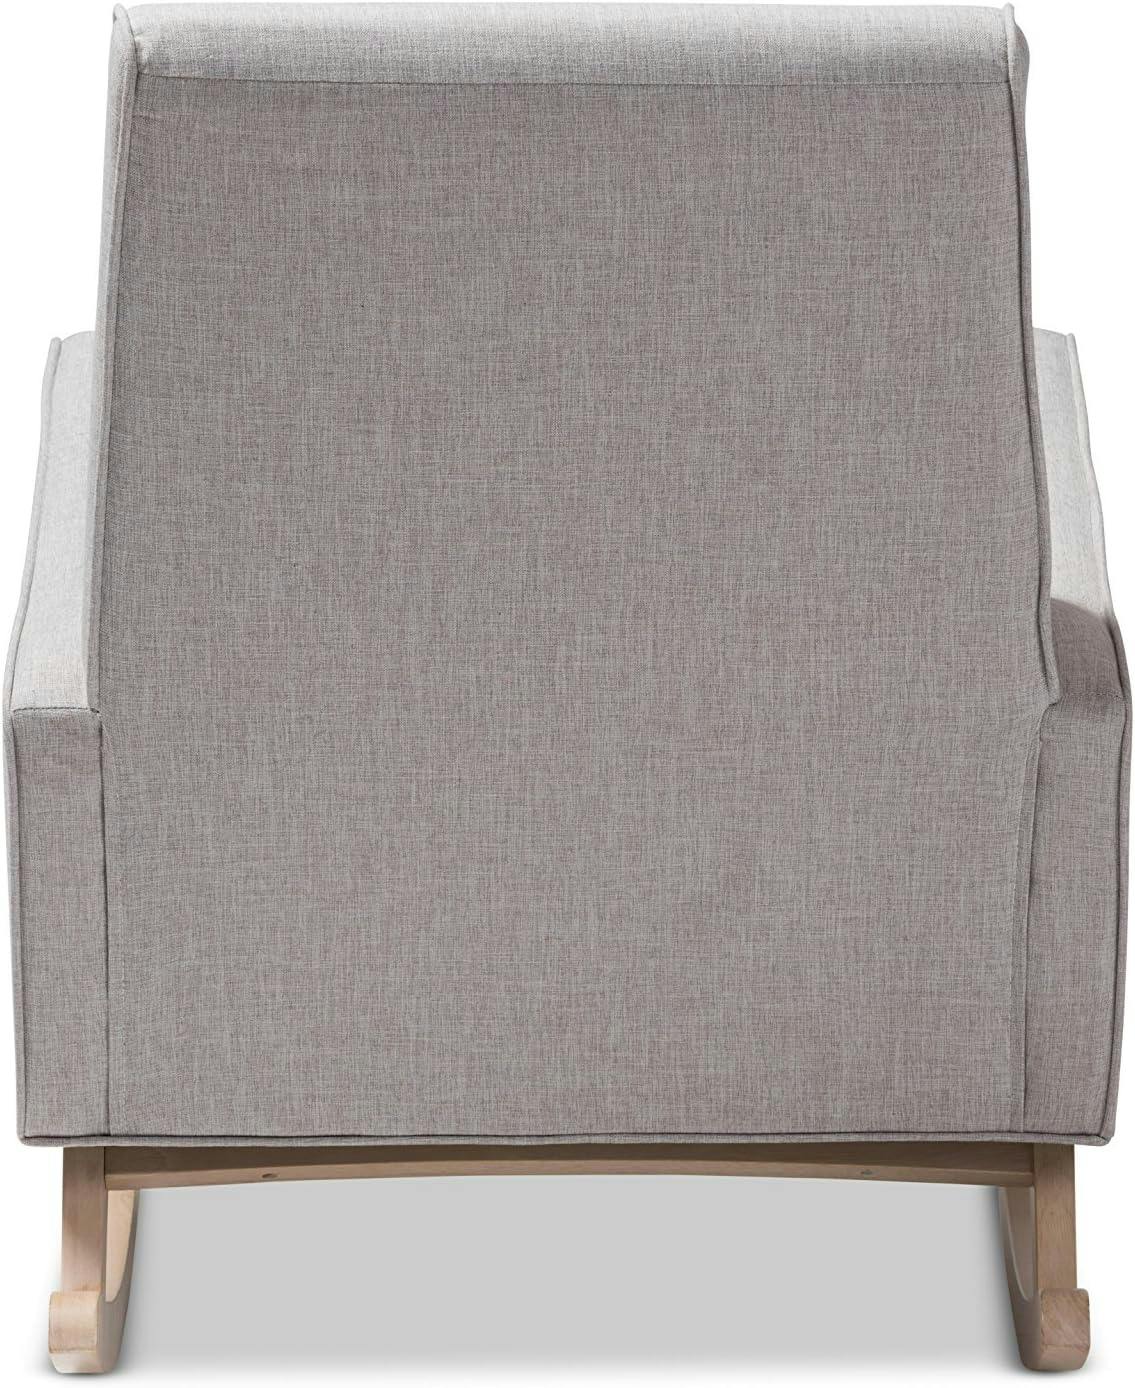 Marlena Mid-Century Grayish Beige Tufted Rocking Chair